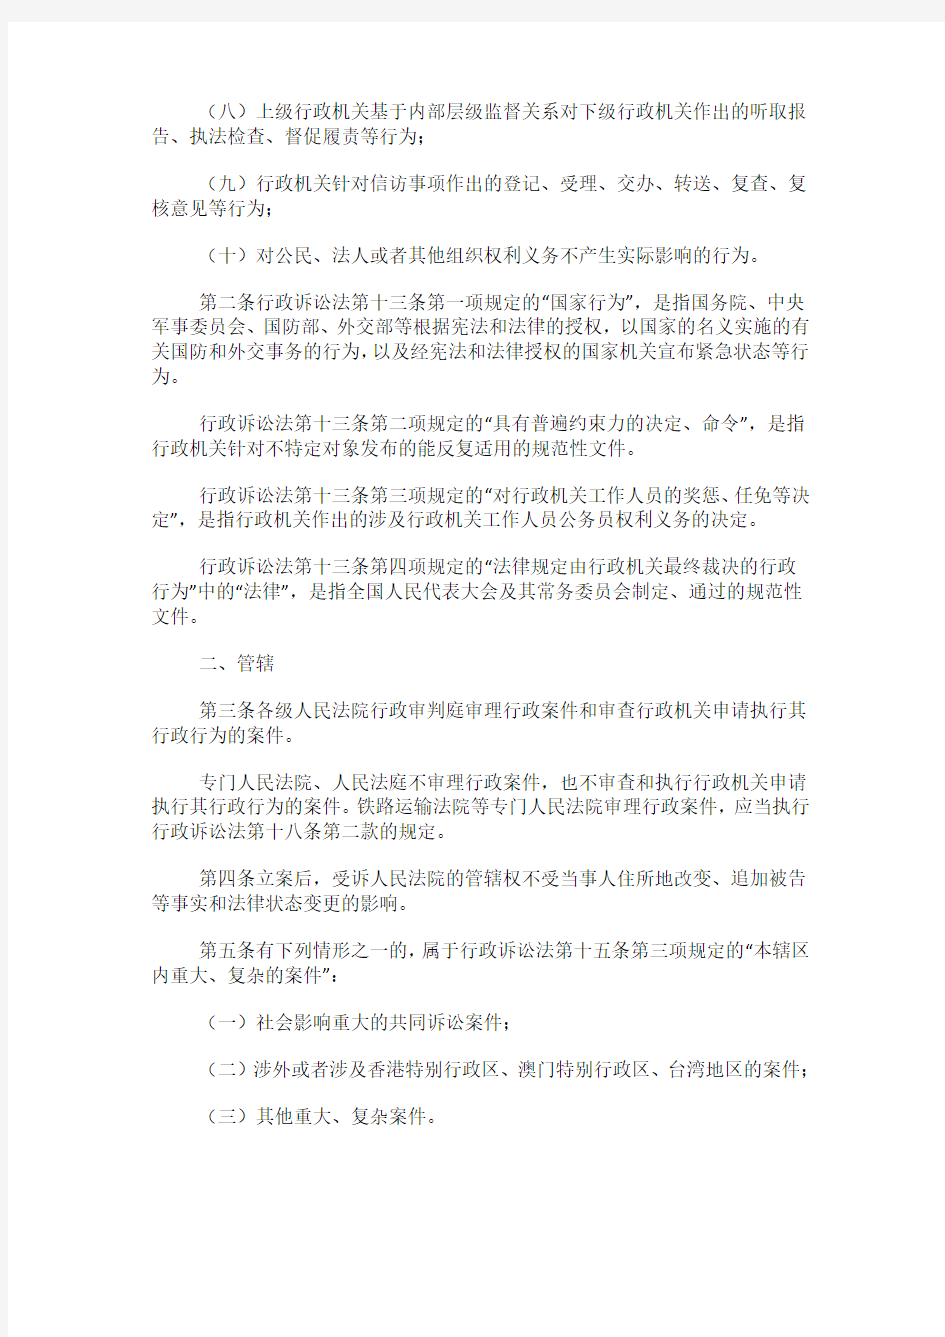 最高人民法院关于适用《中华人民共和国行政诉讼法》的解释 2018年2月8日起施行